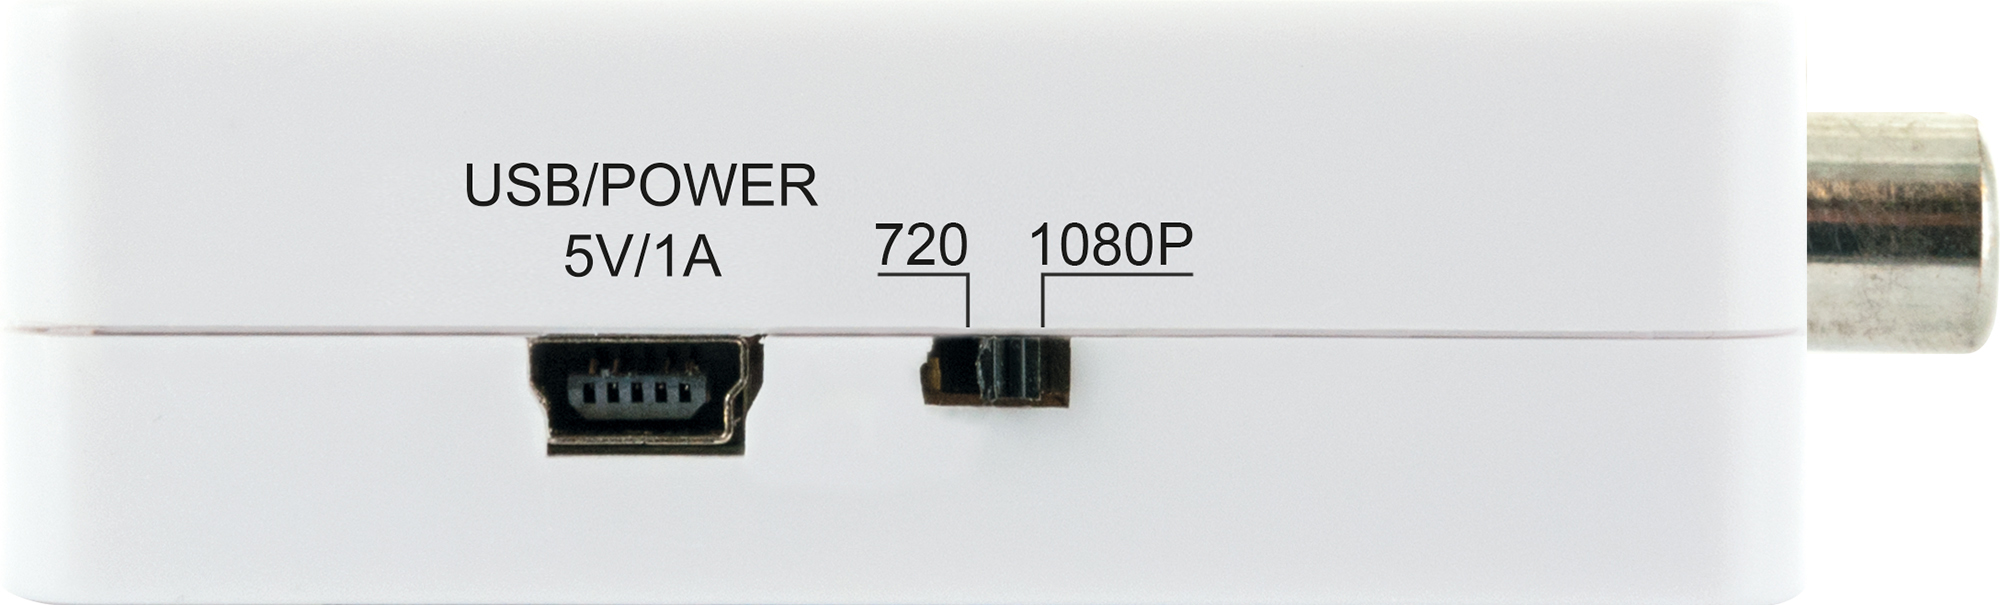 513- -HDMRCA01 SCHWAIGER AV-HDMI-Konverter